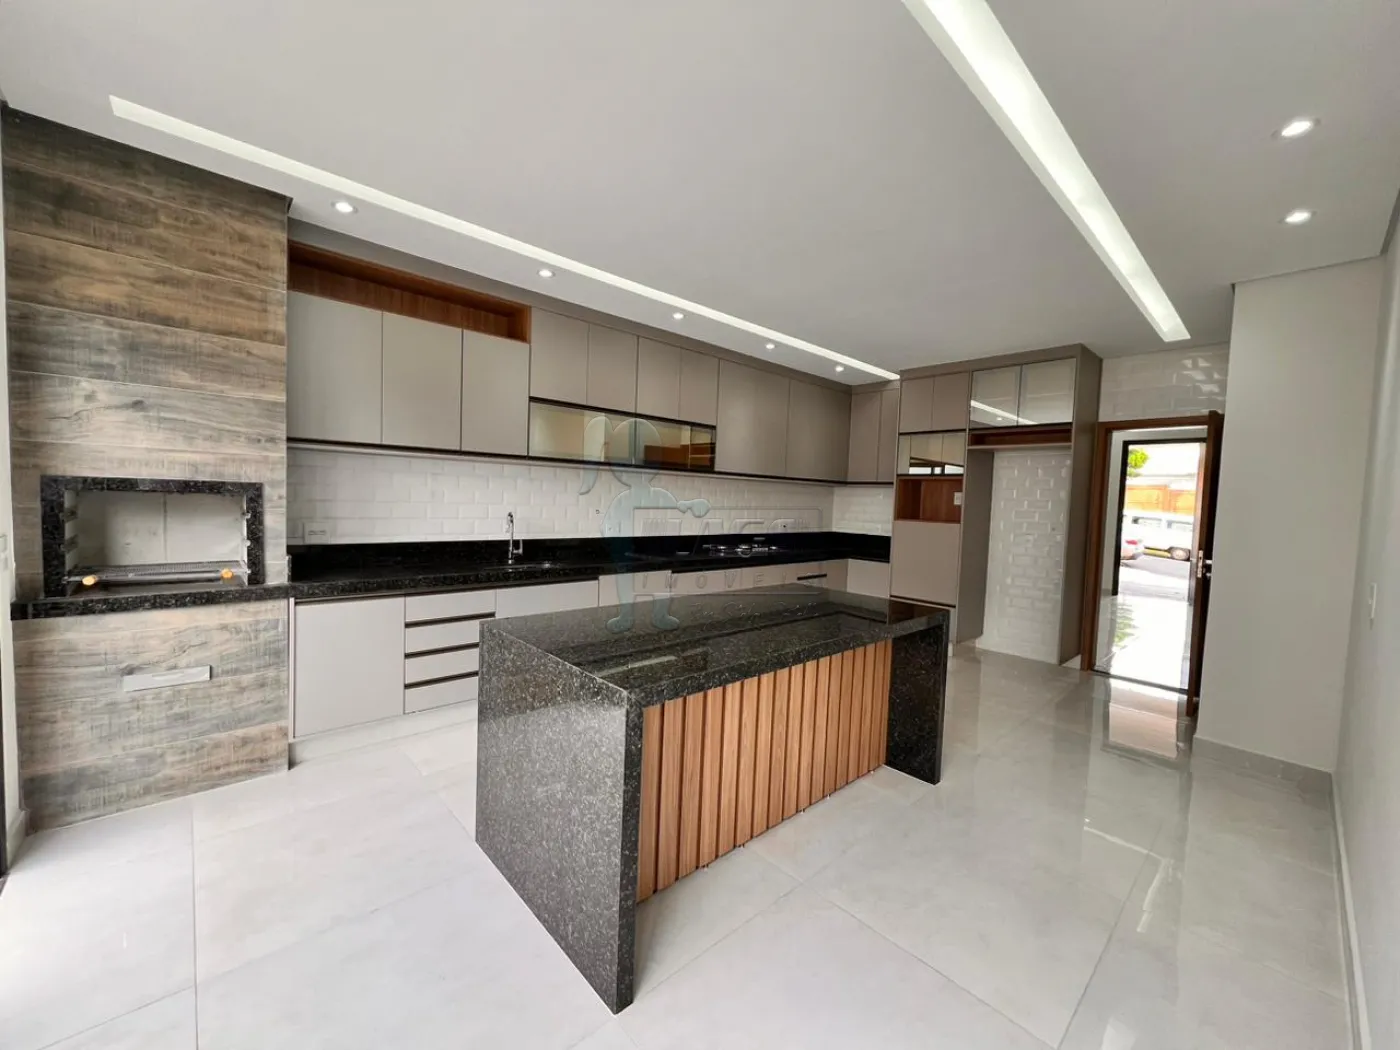 Comprar Casas / Condomínio em Bonfim Paulista R$ 1.150.000,00 - Foto 4